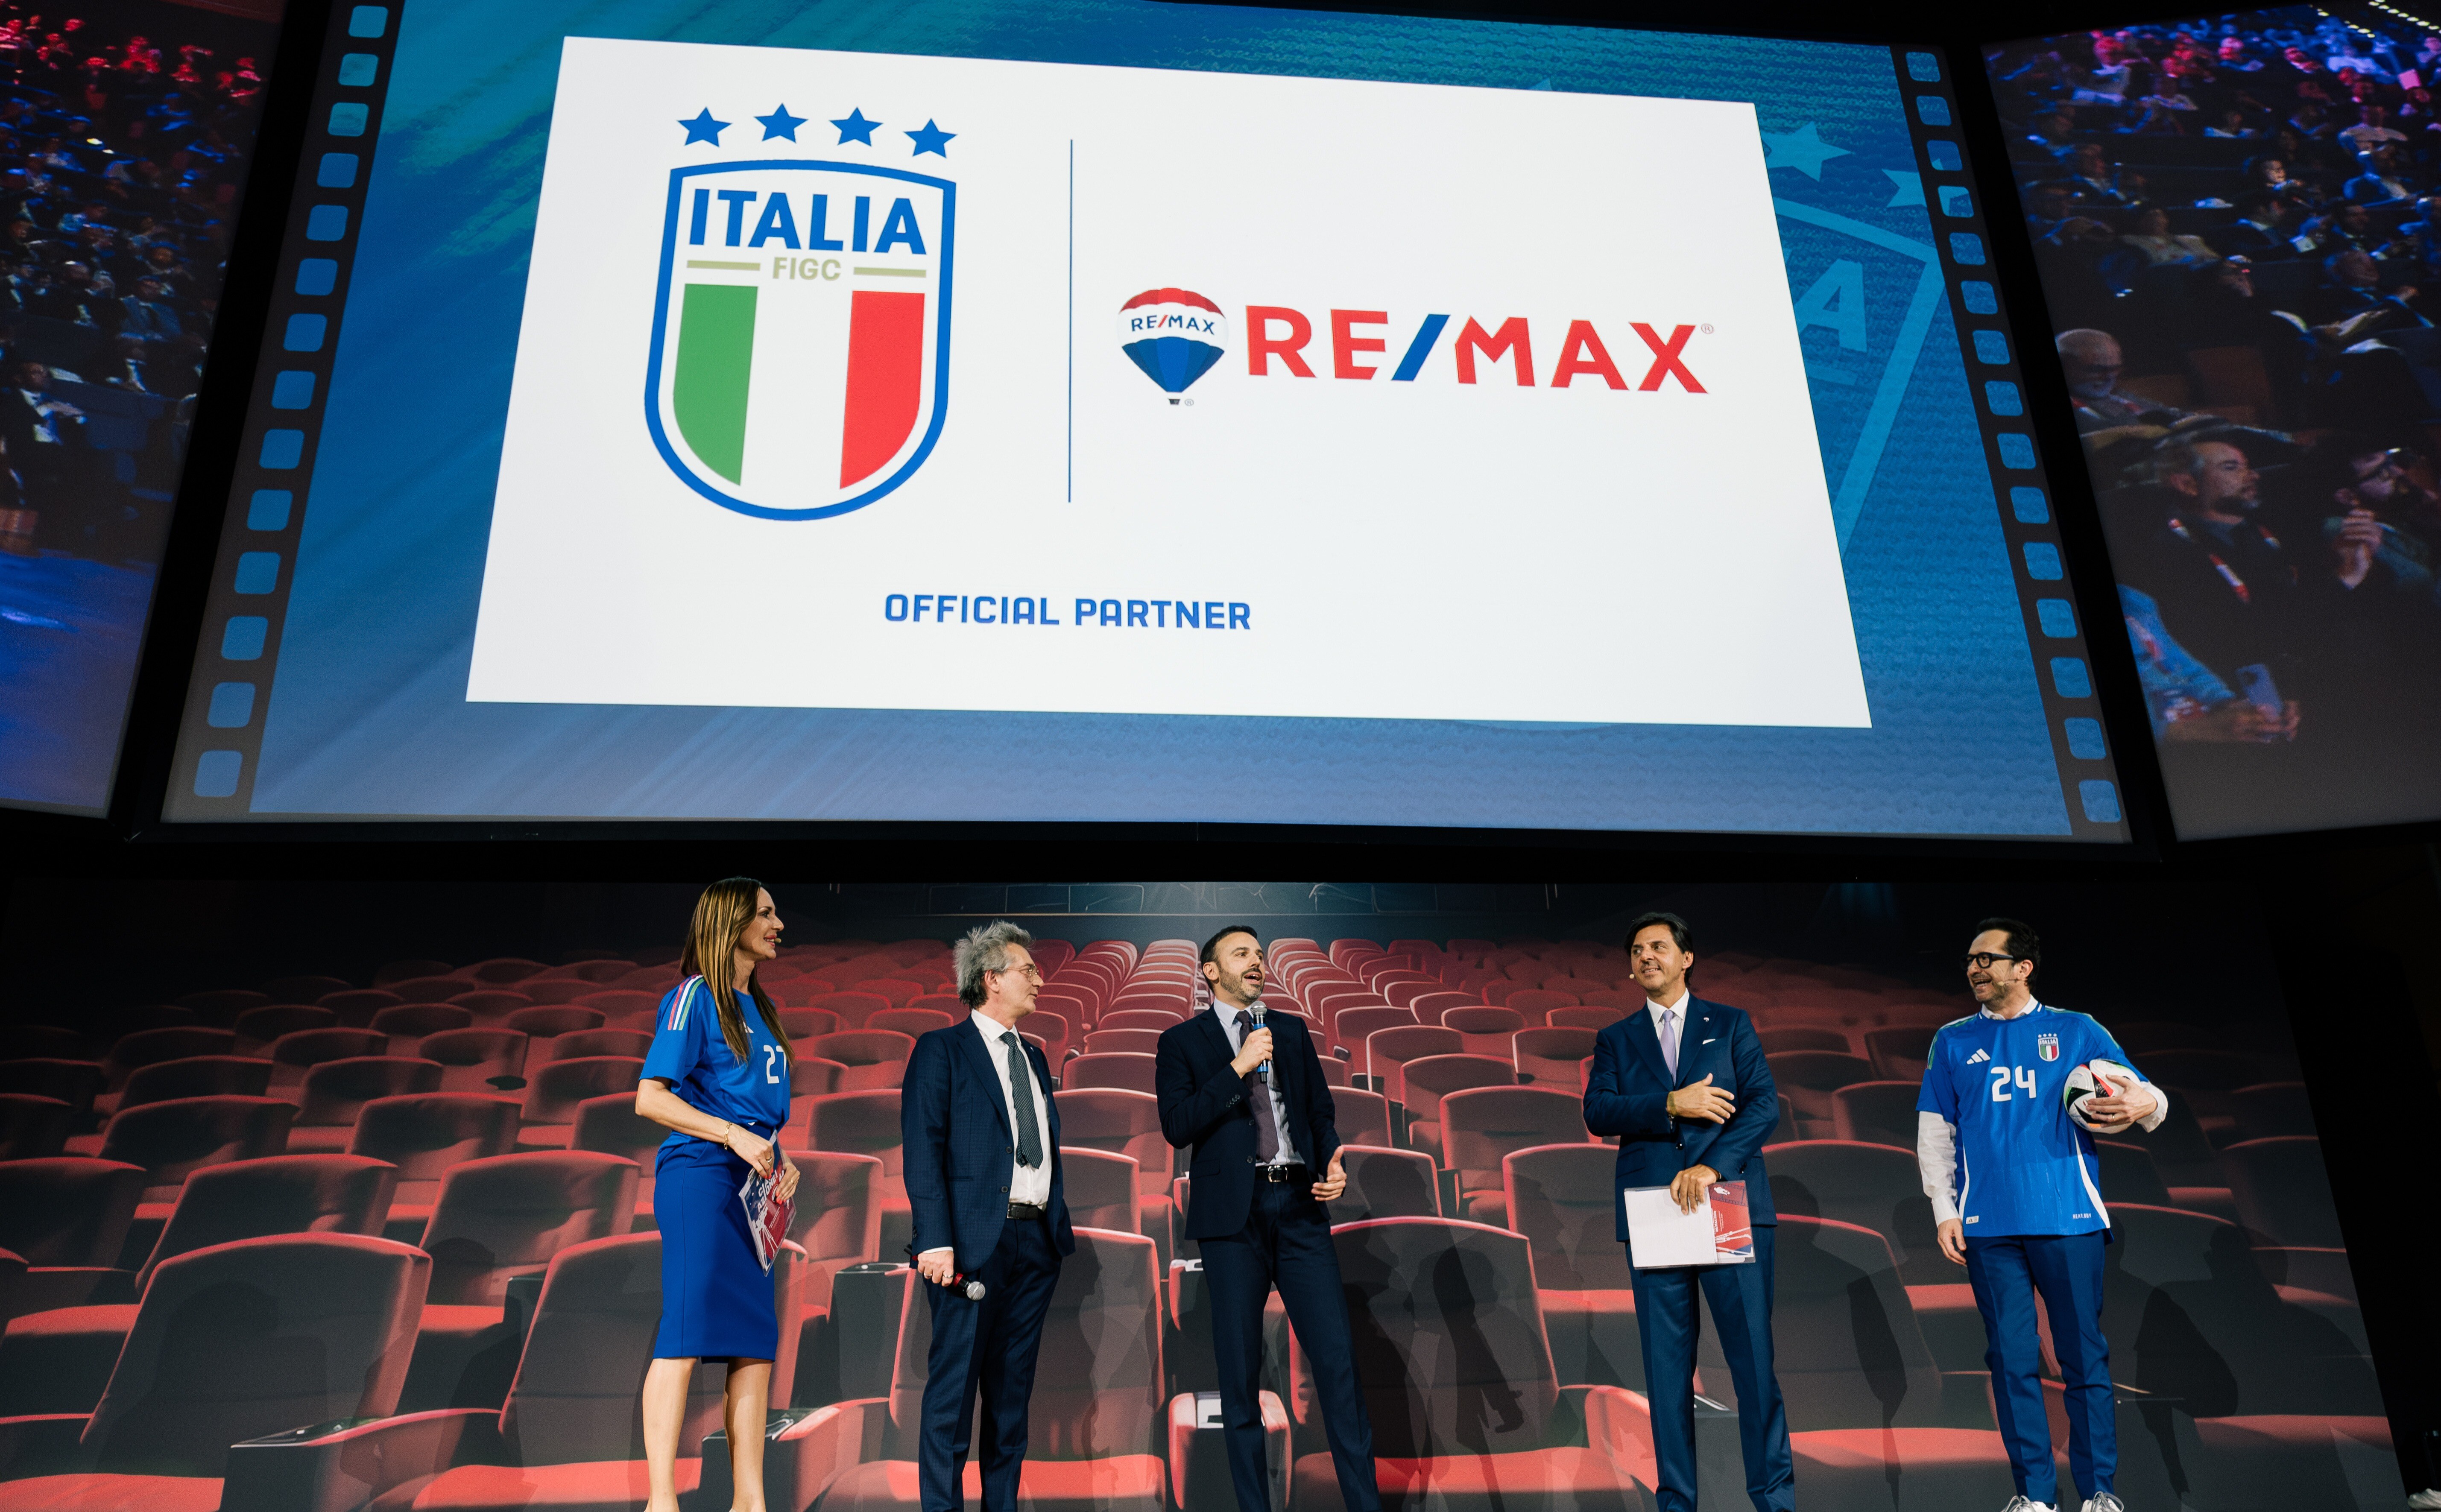 remax-italia&figc-convention remax